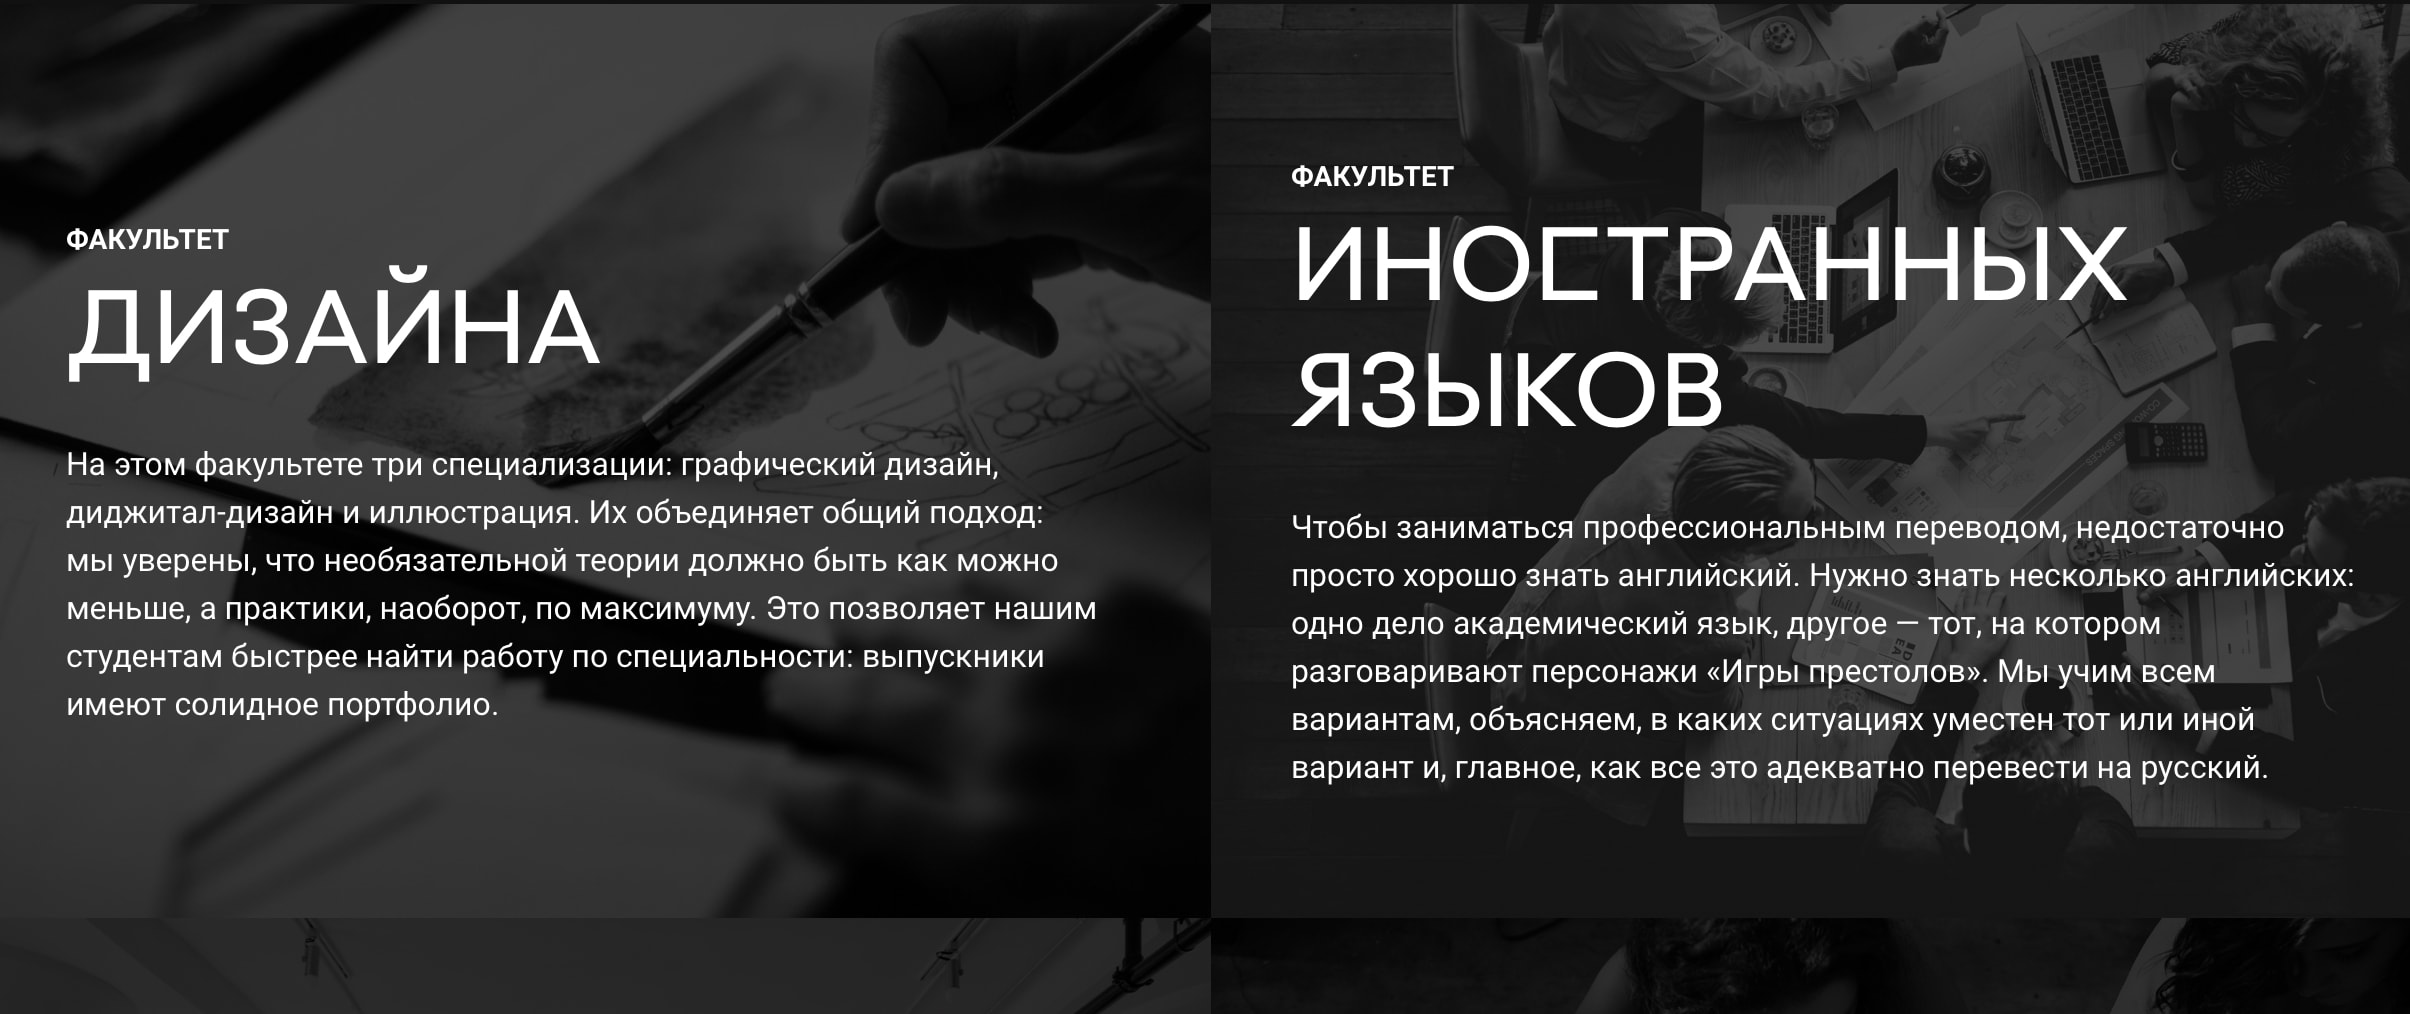 Среда Обучения (sredaobuchenia.ru), скриншот интерфейса 2